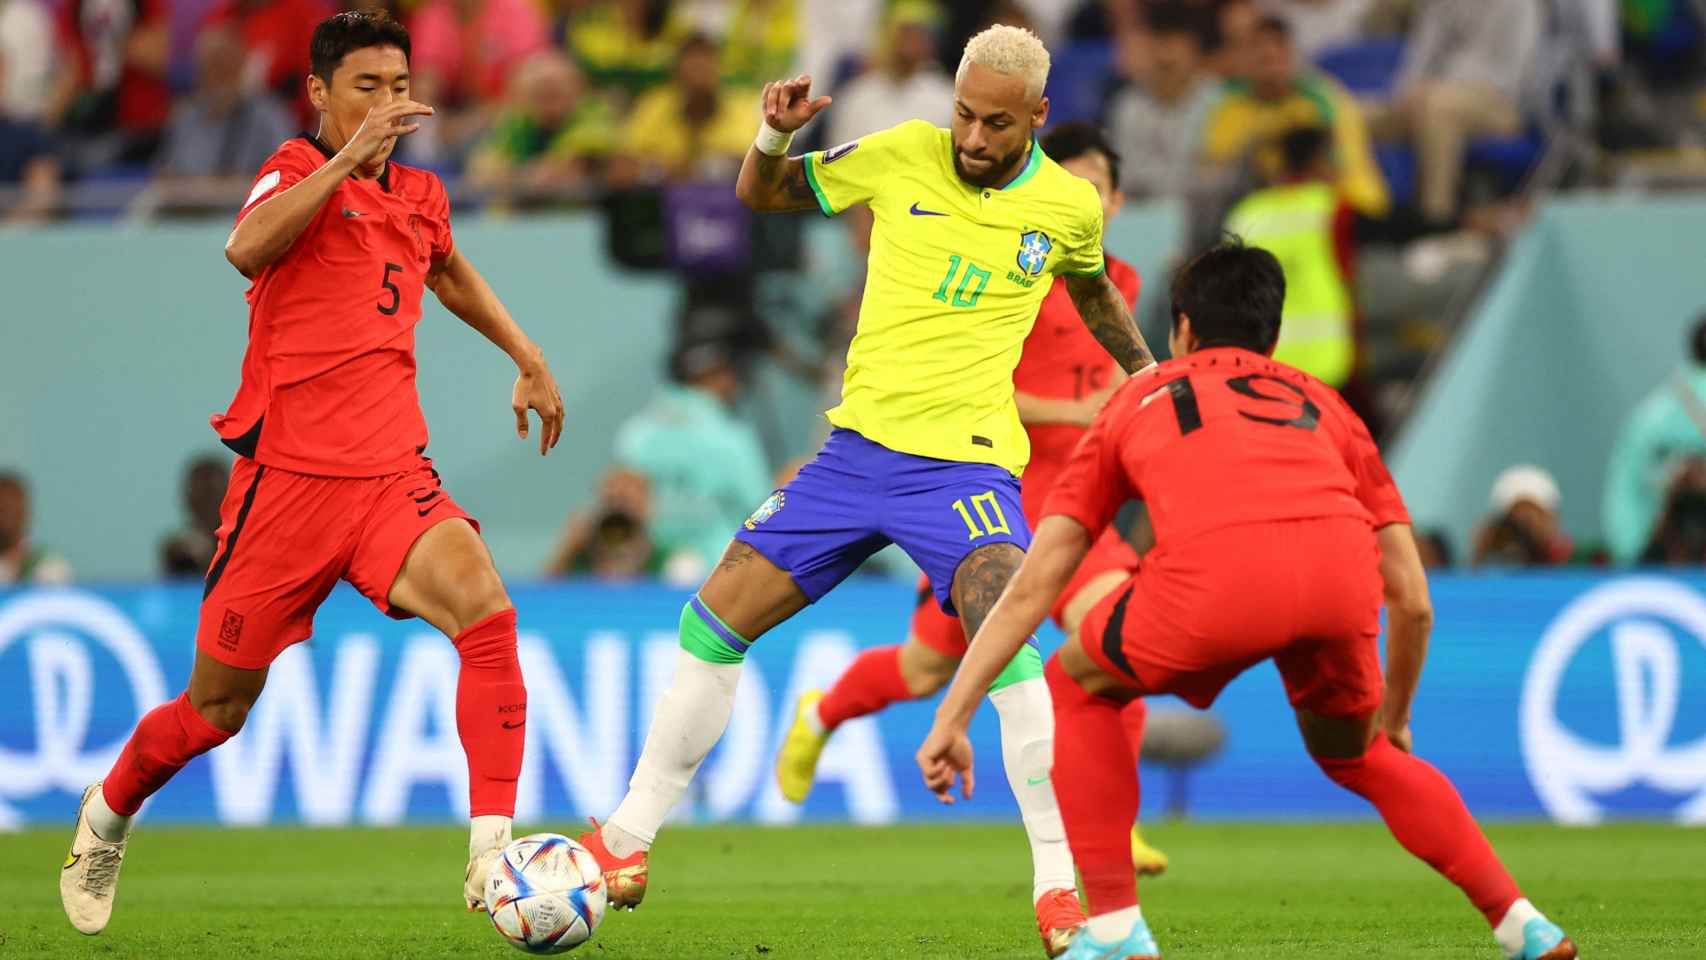 Brasil 4 - 1 Corea del Sur, el Mundial de Qatar 2022 | Resultado, narración y goleadores del partido